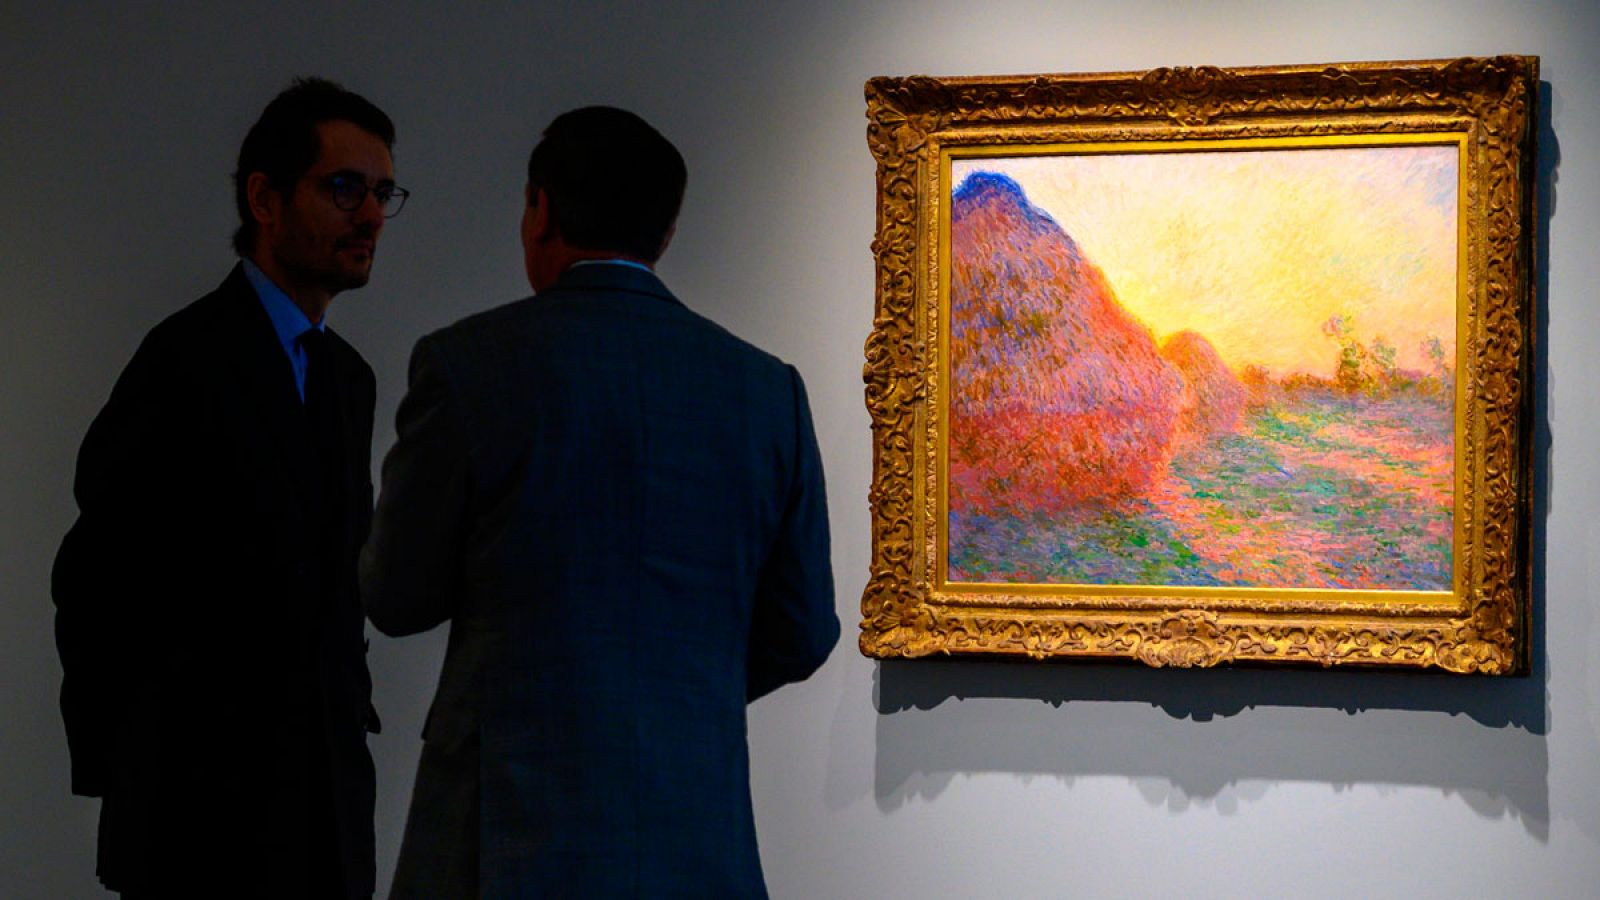 Un cuadro de Monet se convierte en el lienzo impresionista más caro